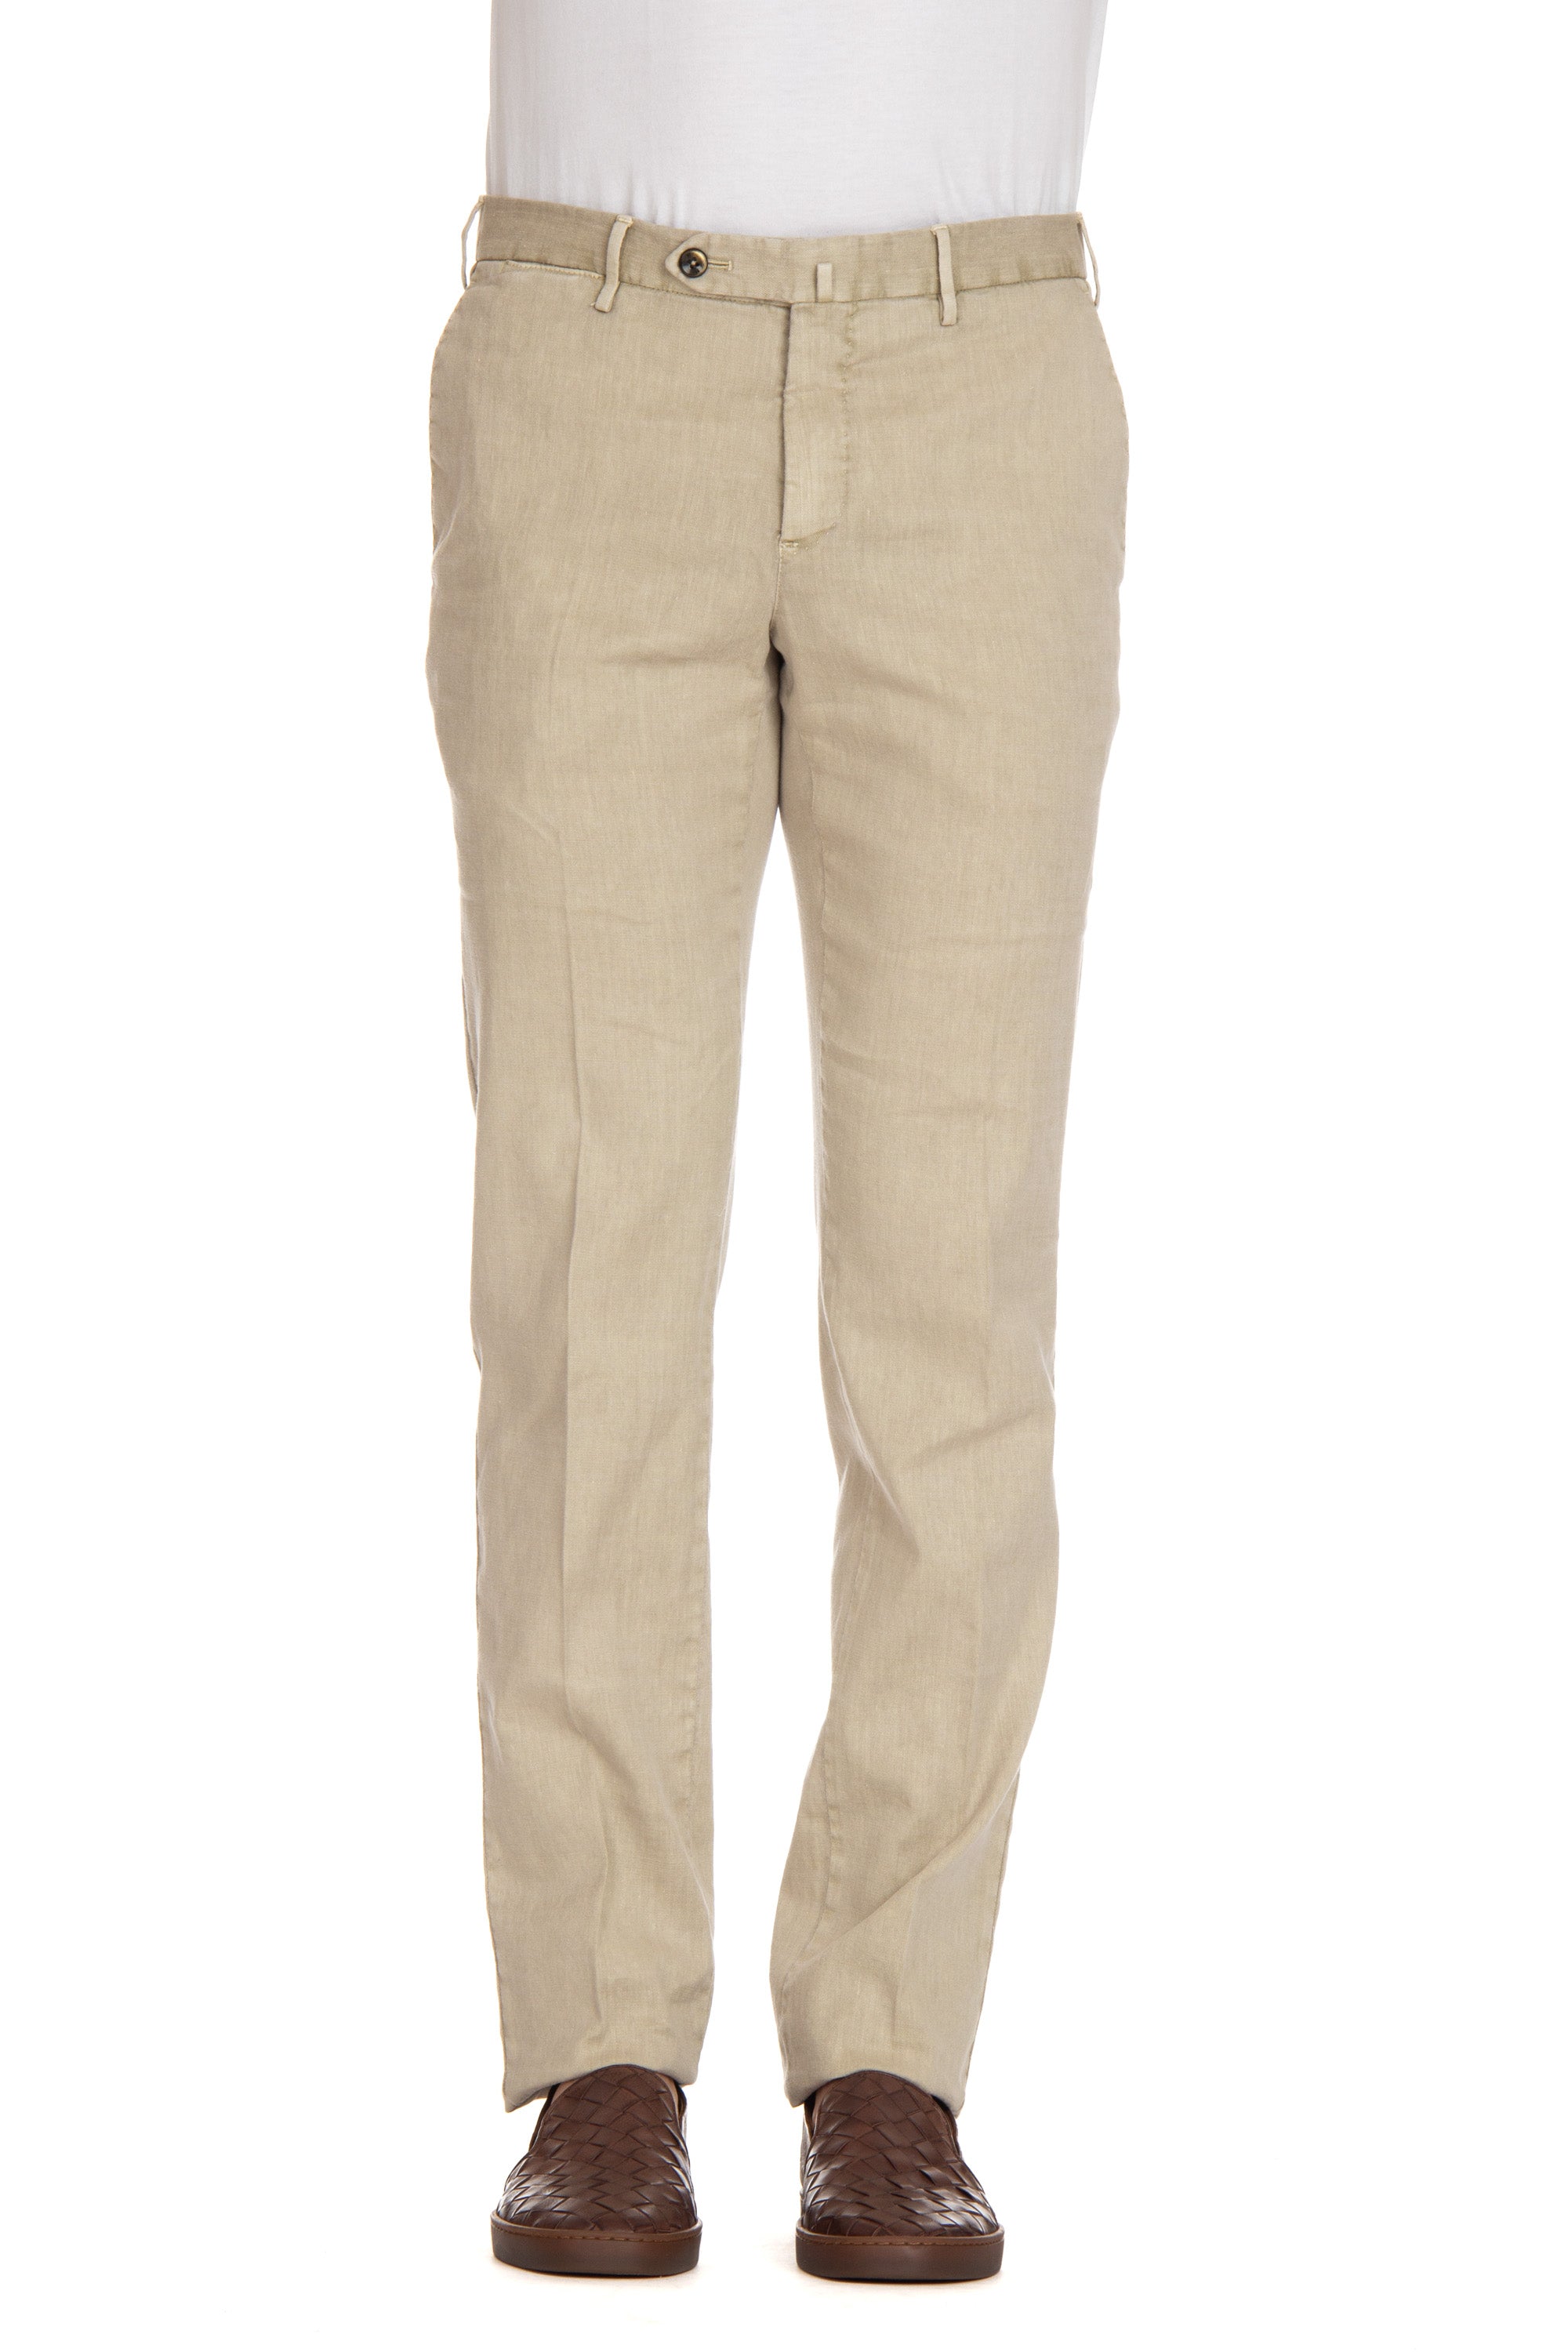 Pantalone in lino-cotone slim fit